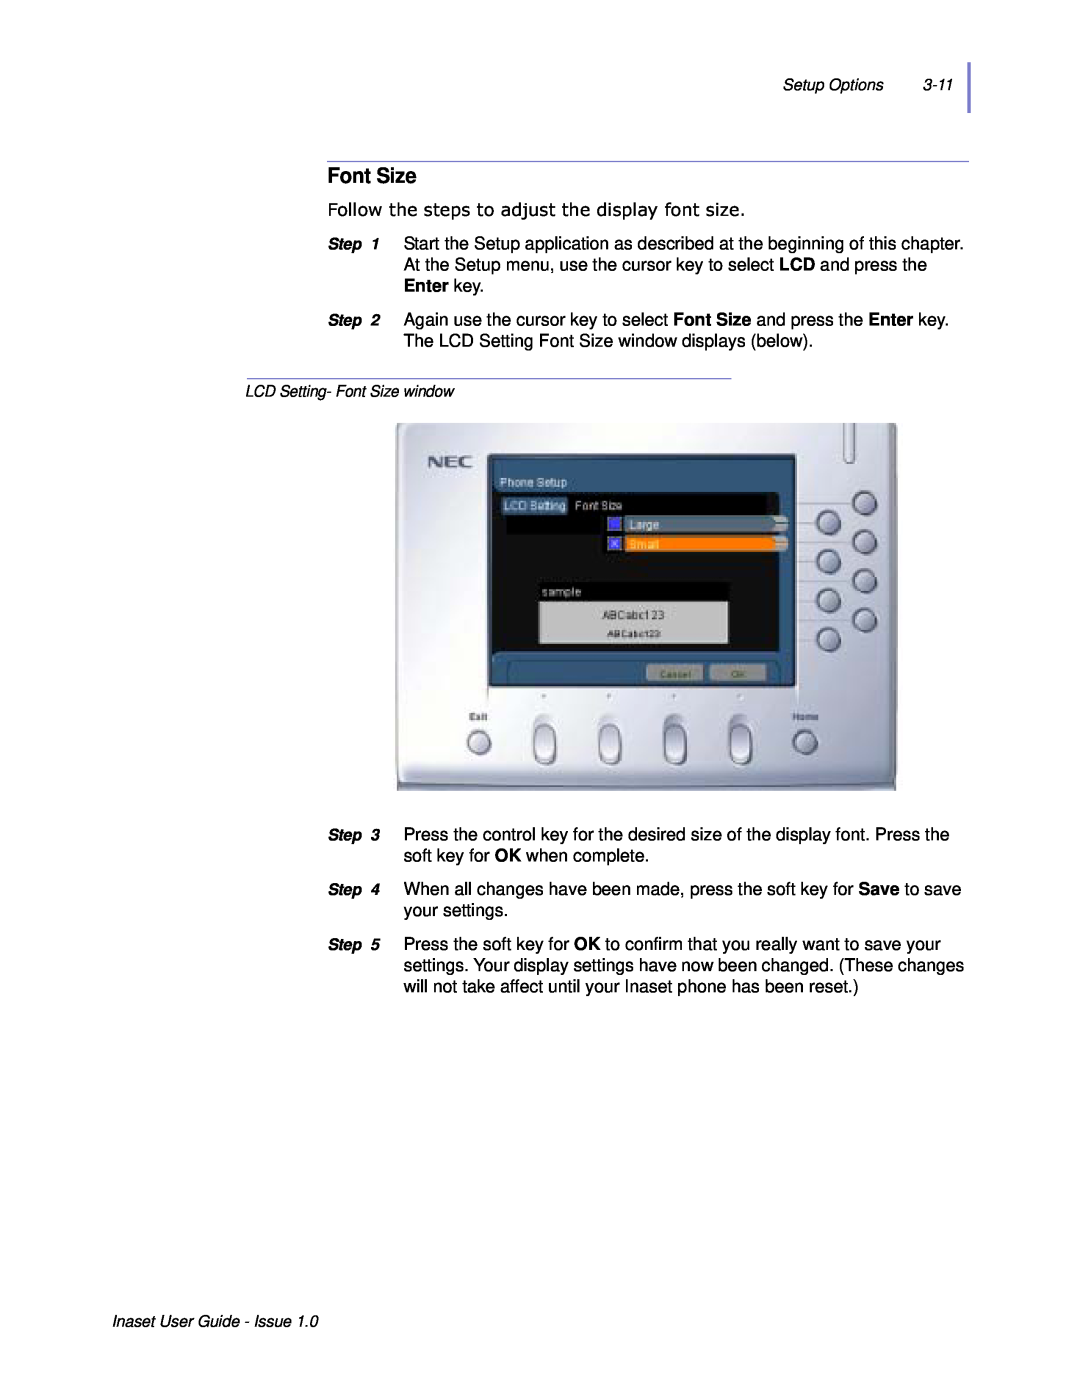 NEC NEAX 2000 IPS manual Font Size, Roorzwkhvwhsvwrdgmxvwwkhglvsod\Irqwvlh 